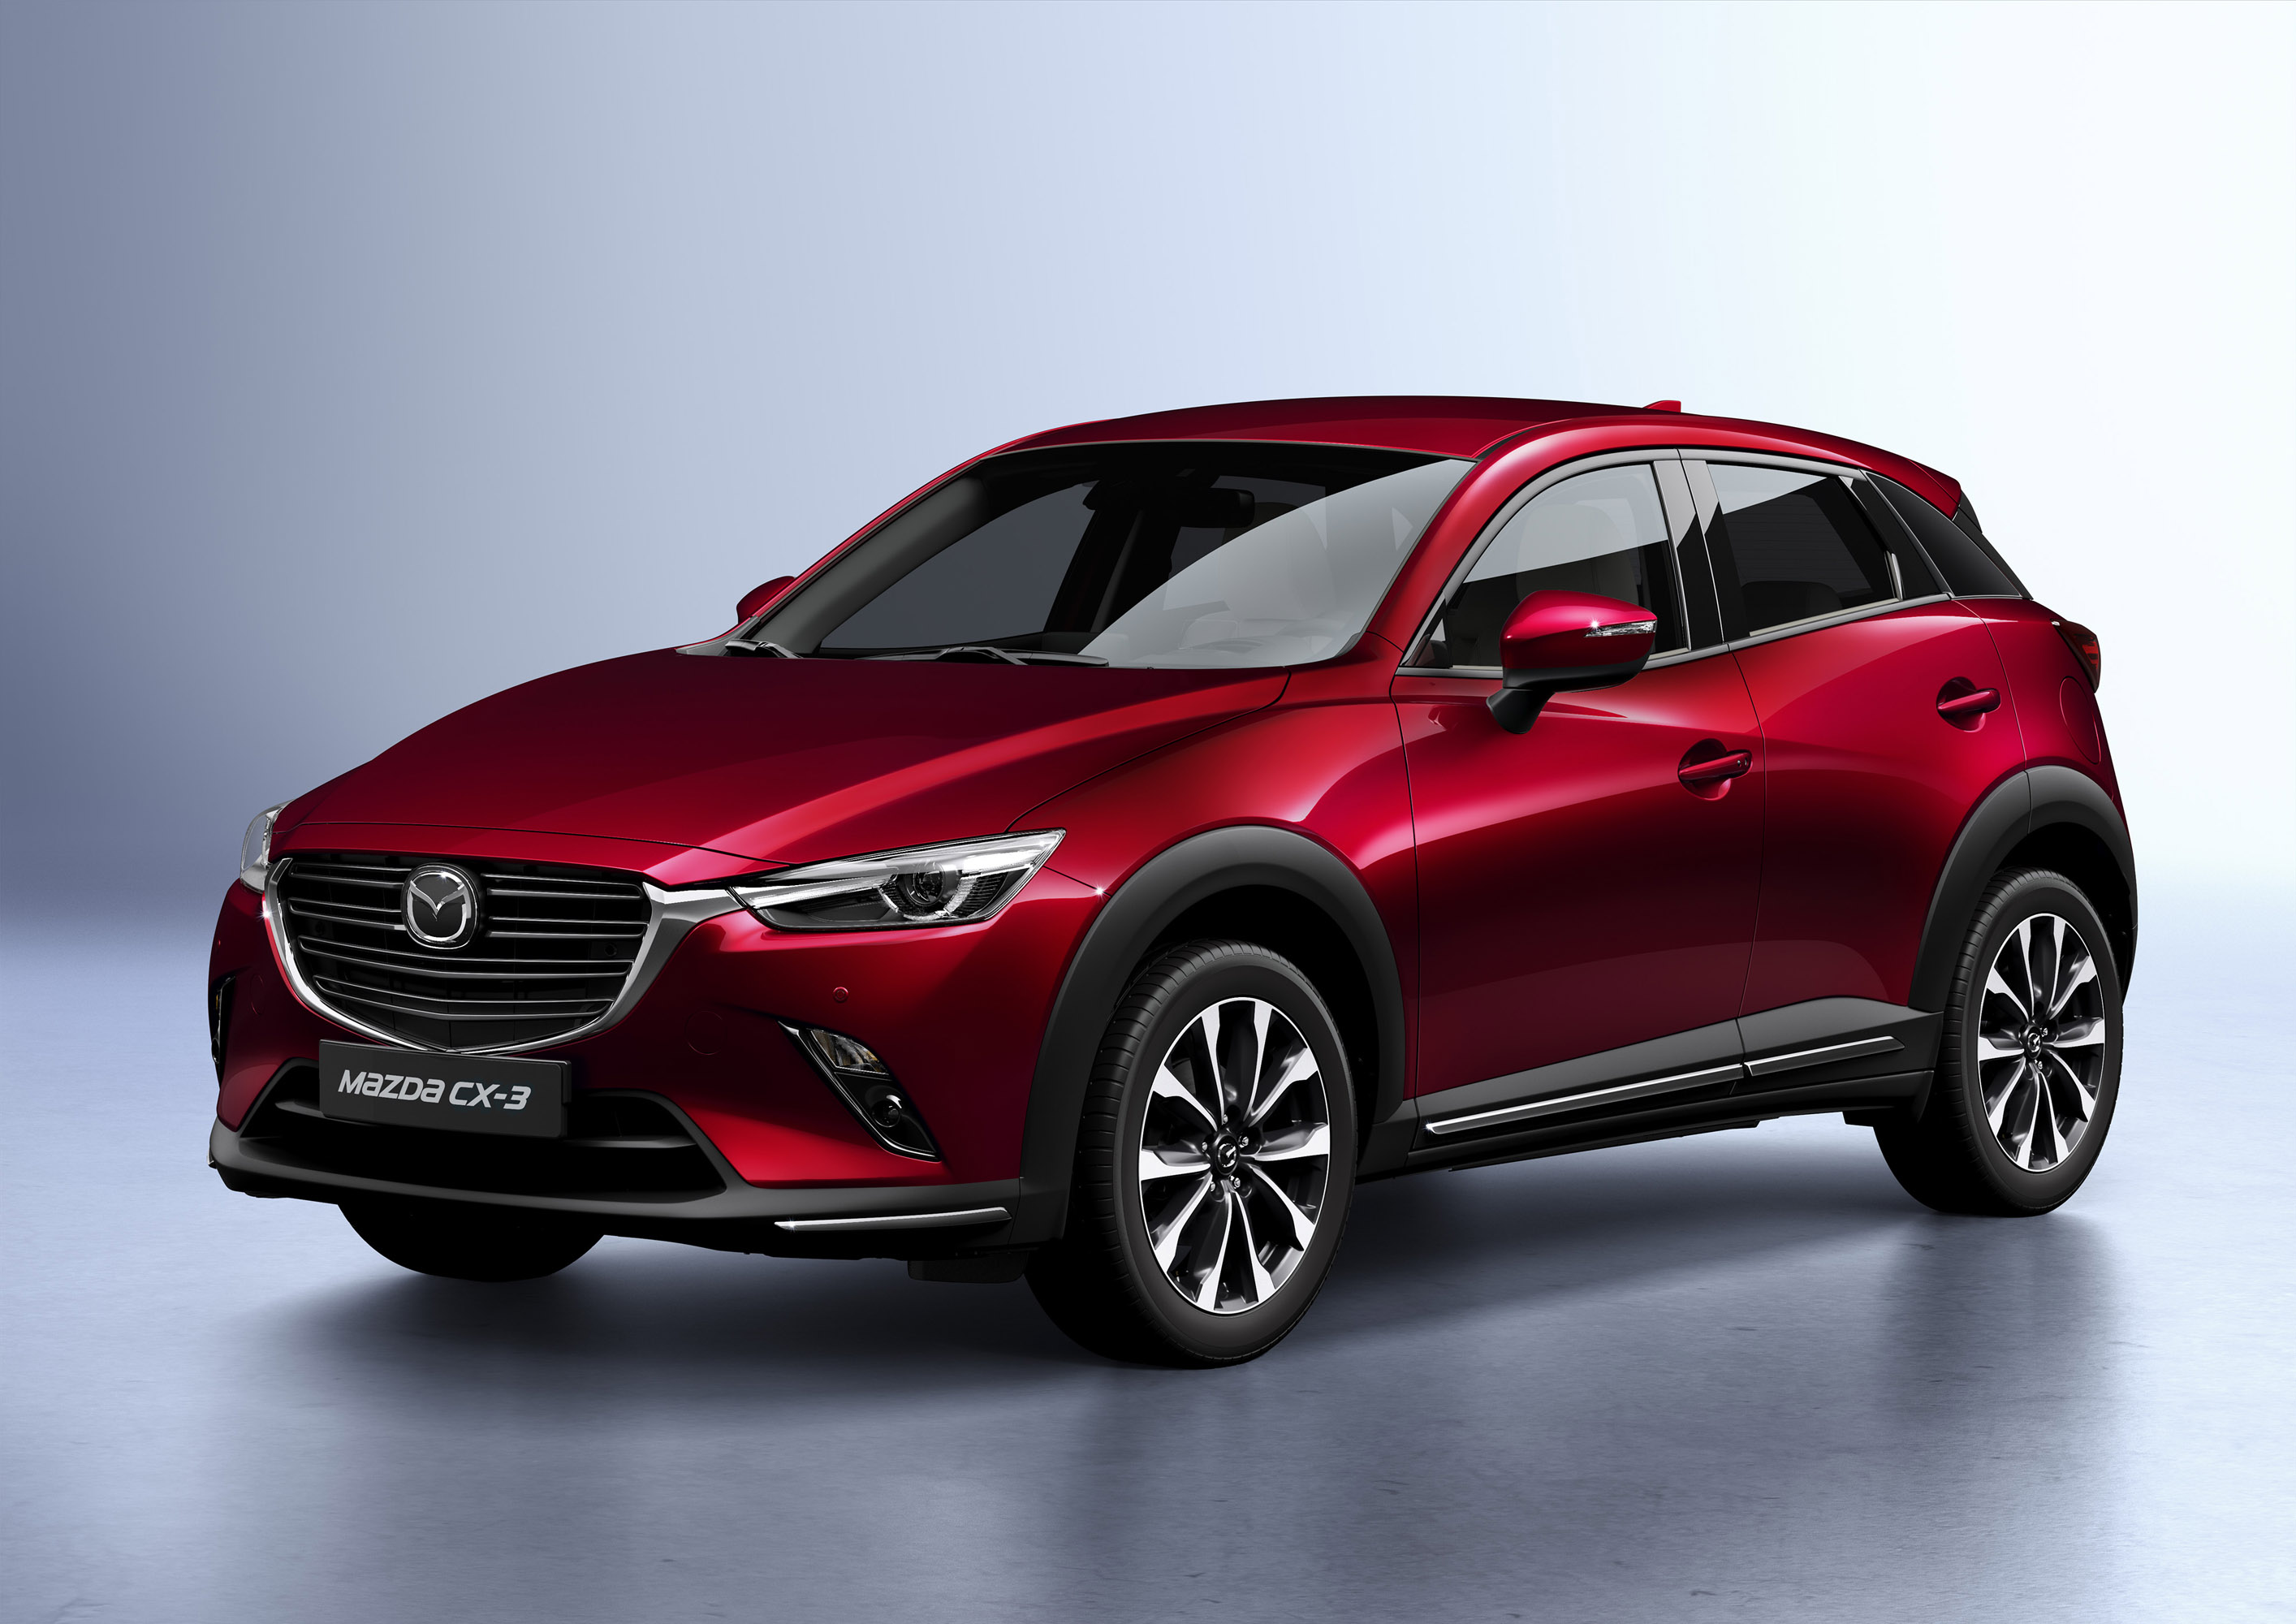 Mazda демонстрирует свою новую модель CX-3, и мы должны сказать, что мы впечатлены тем, на что нацелен бренд.